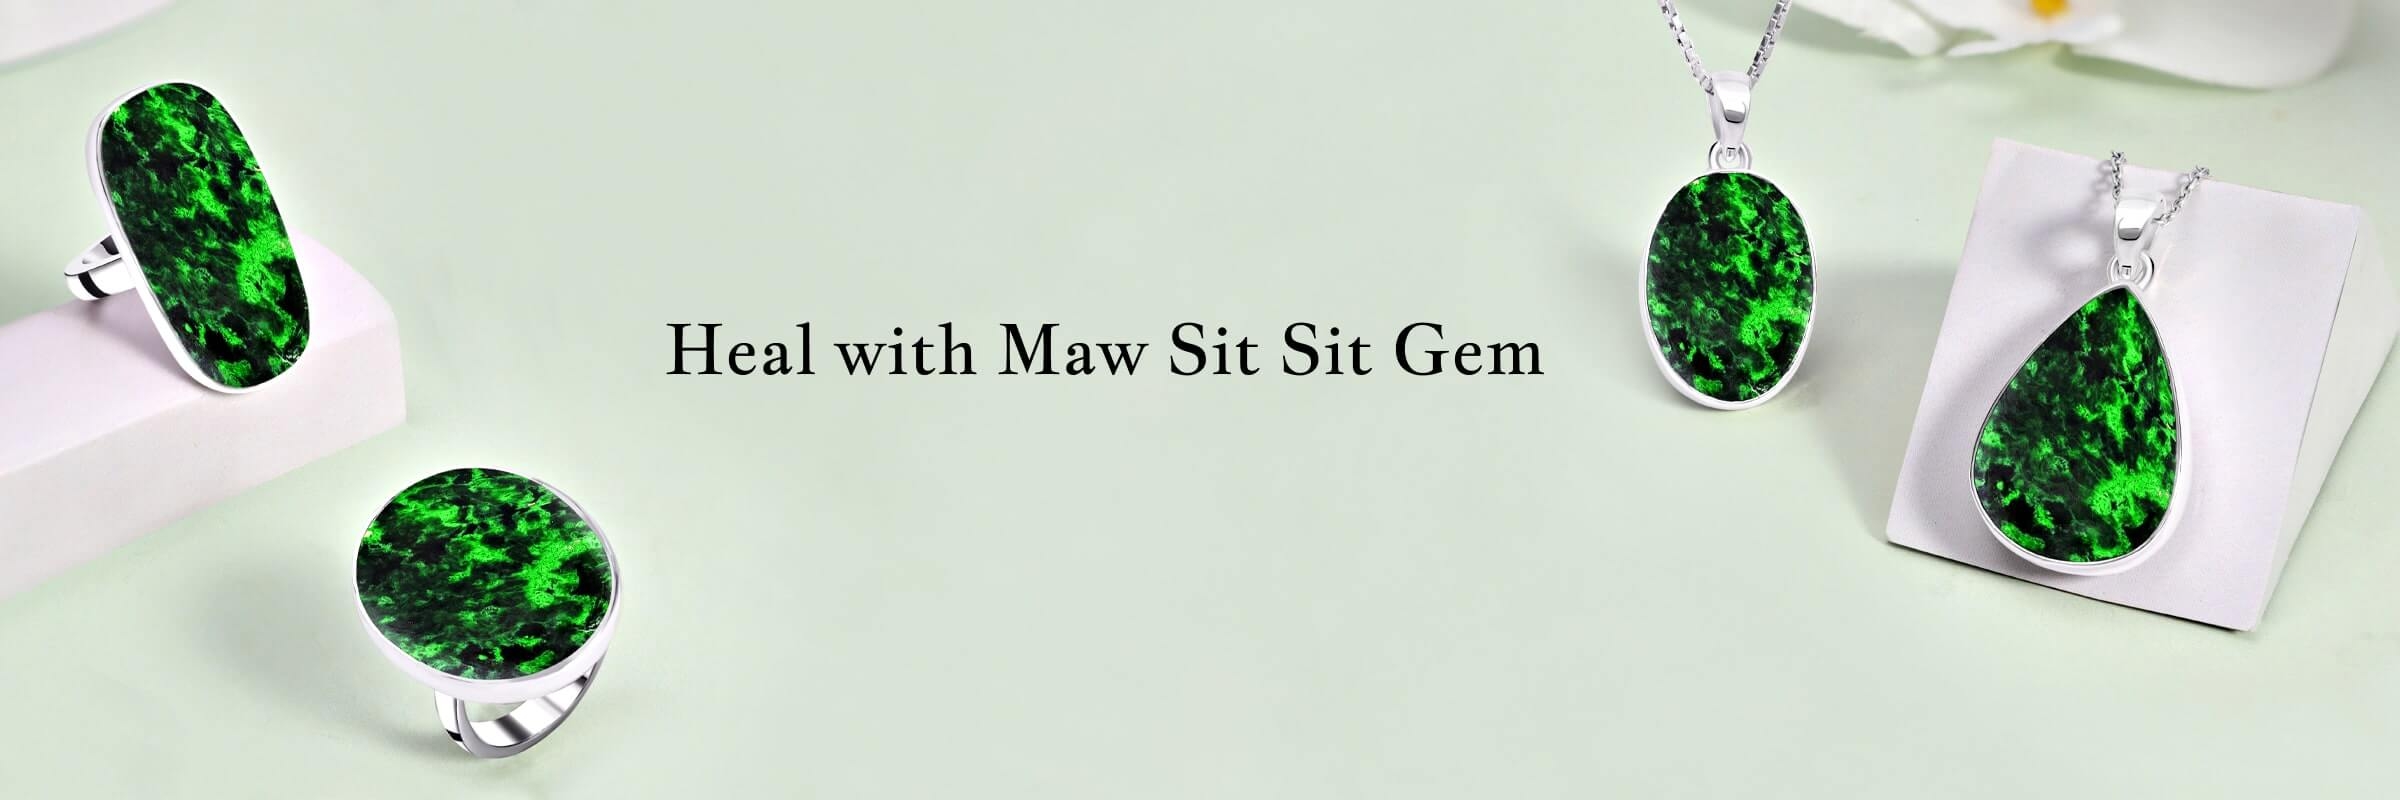 Healing Properties of Maw Sit Sit Gem